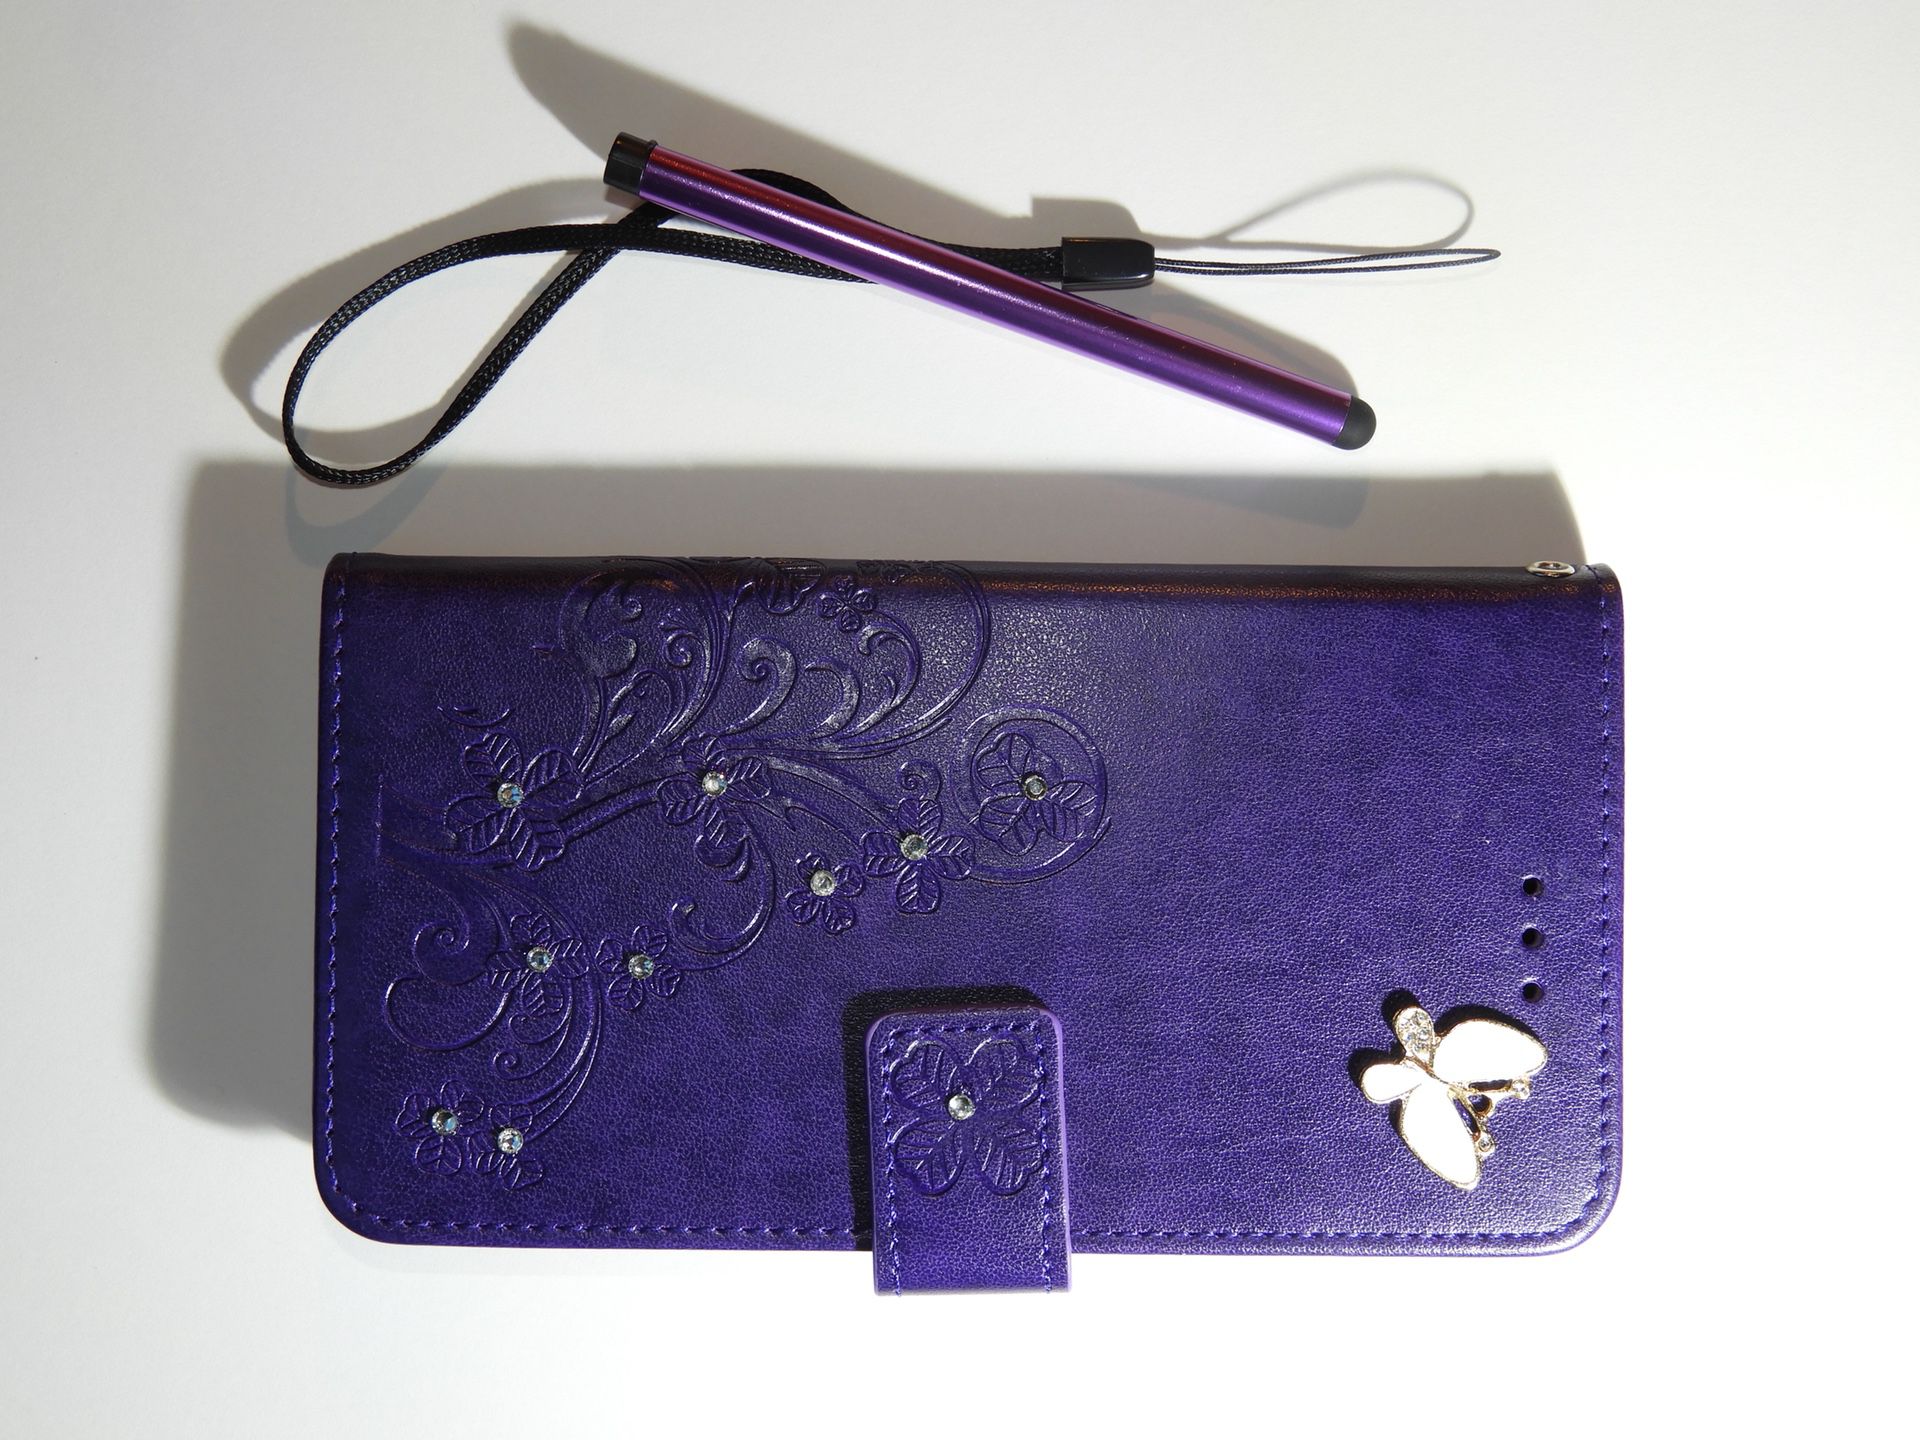 iPhone 6s Plus purple leather case/protector de piel color morado